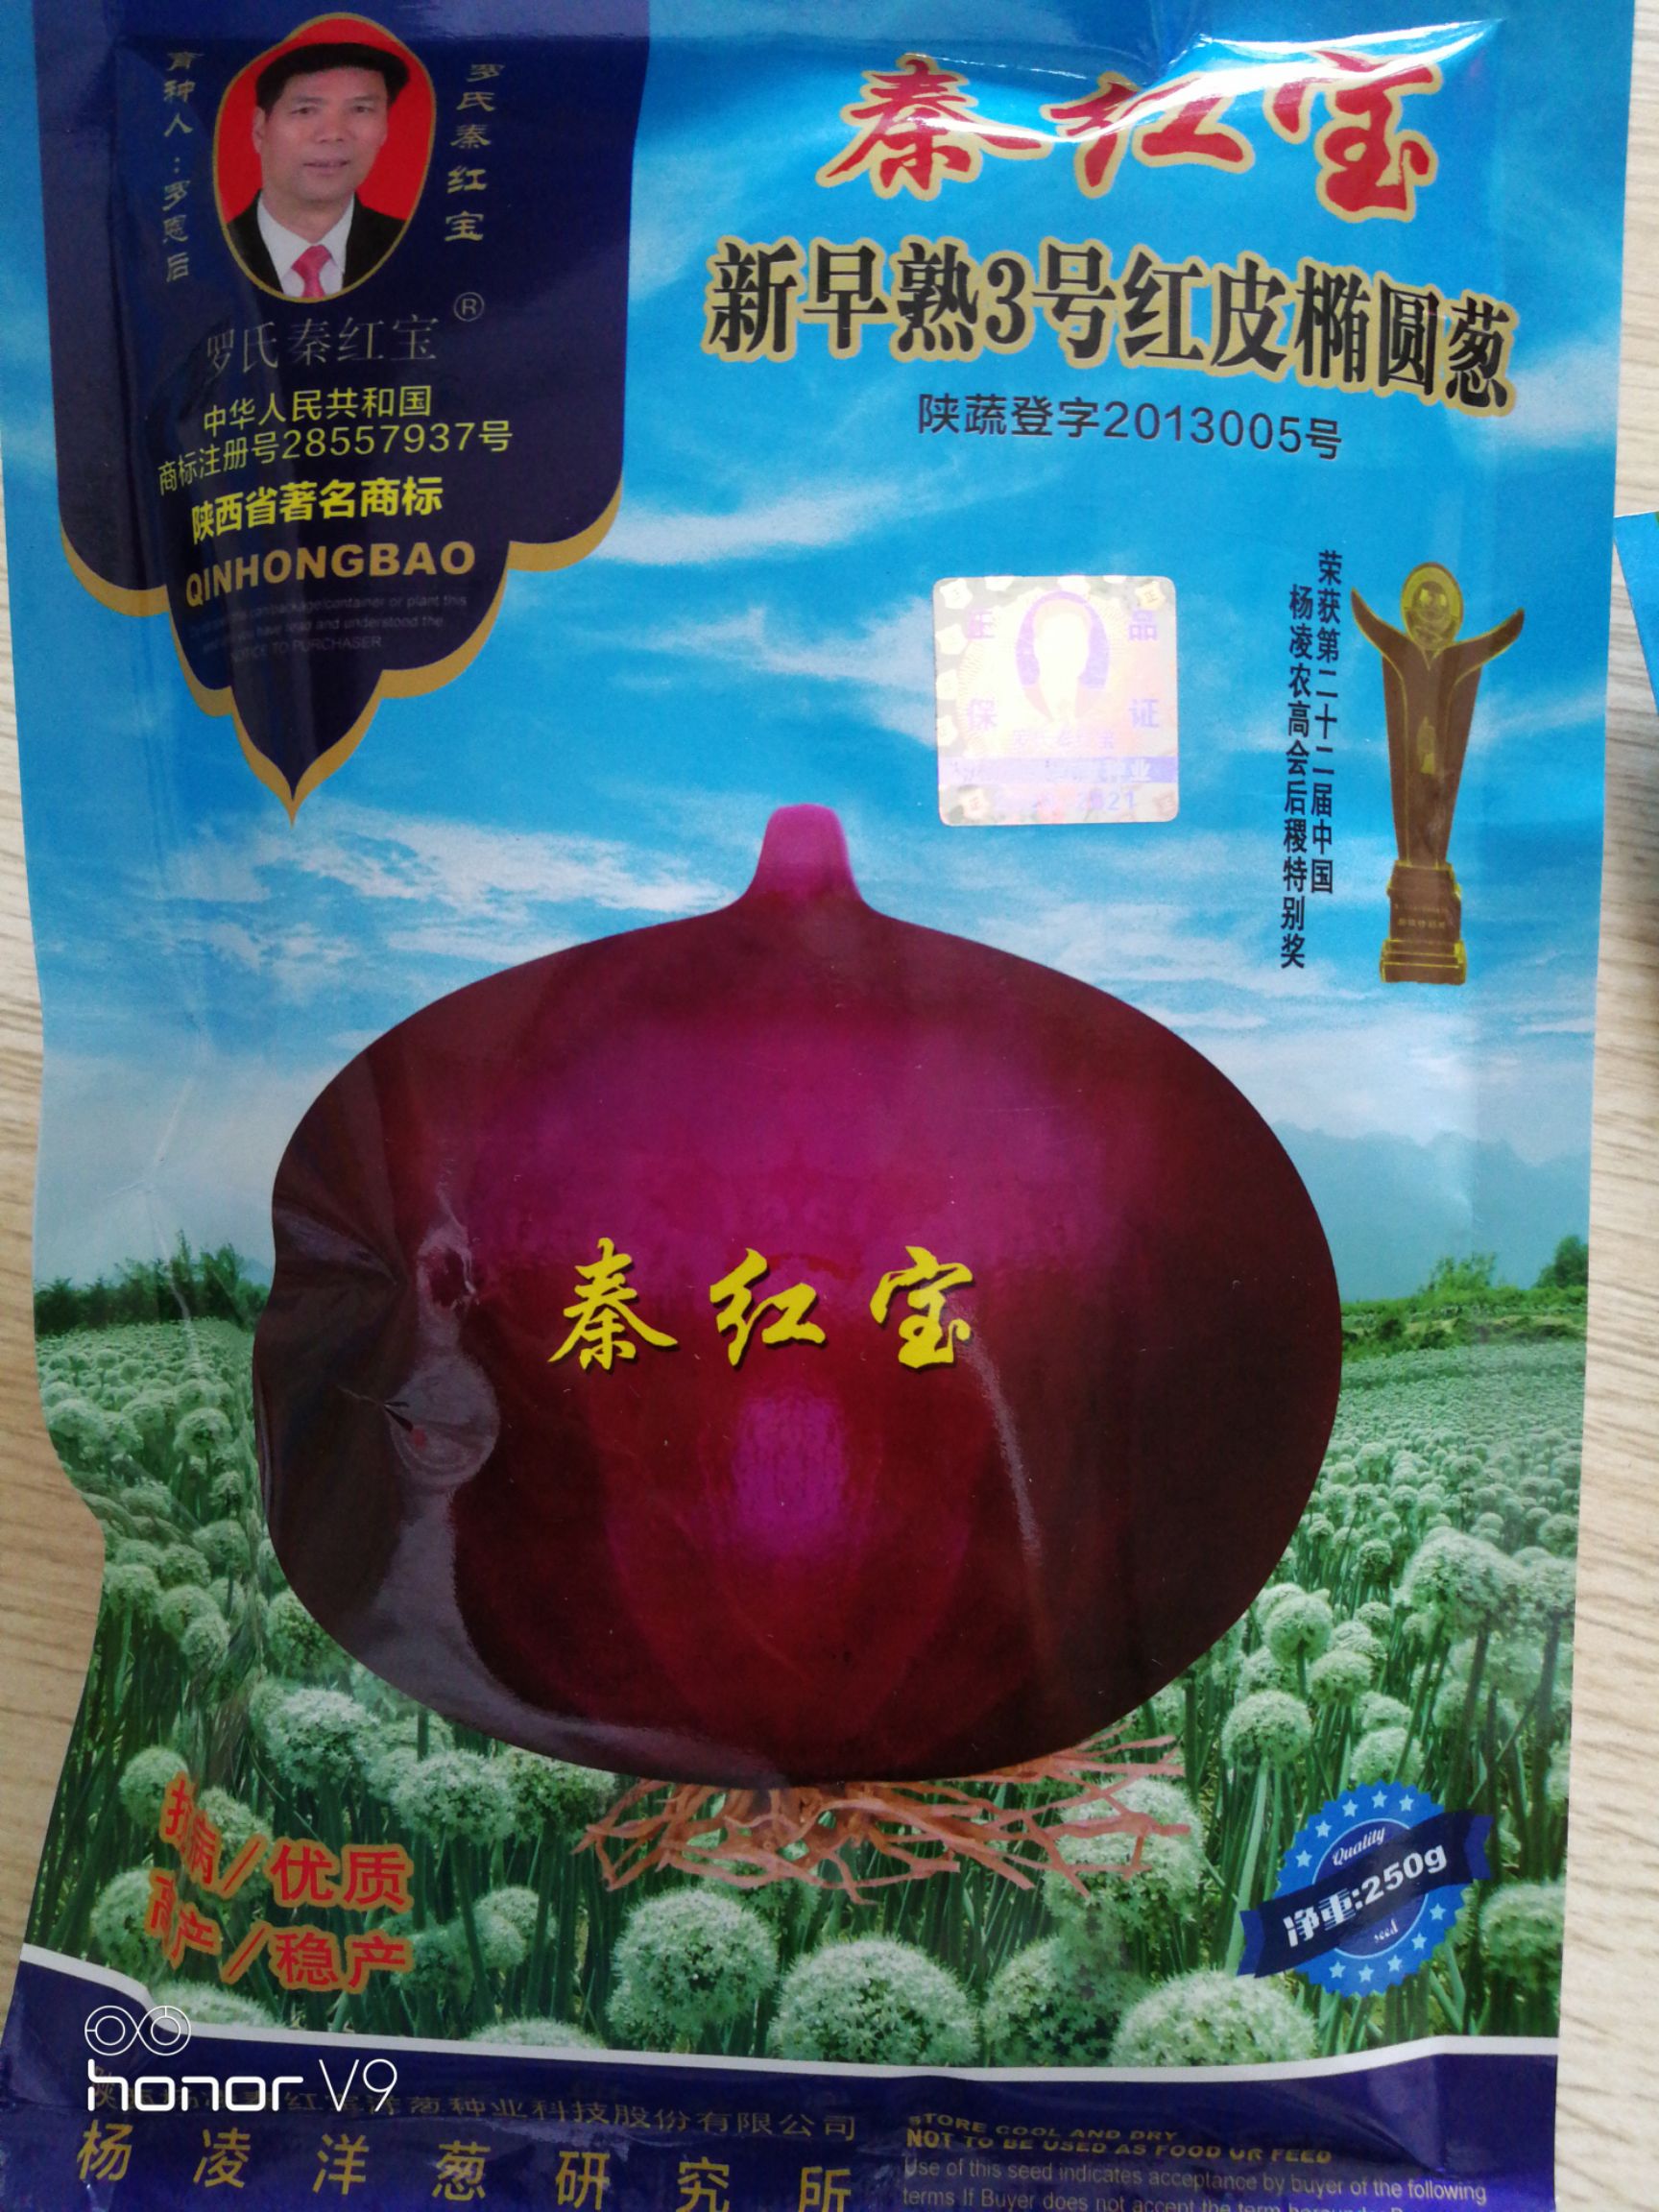 秦红宝洋葱种子,早熟,晚熟,高桩,扁圆型的,价格58元/袋 